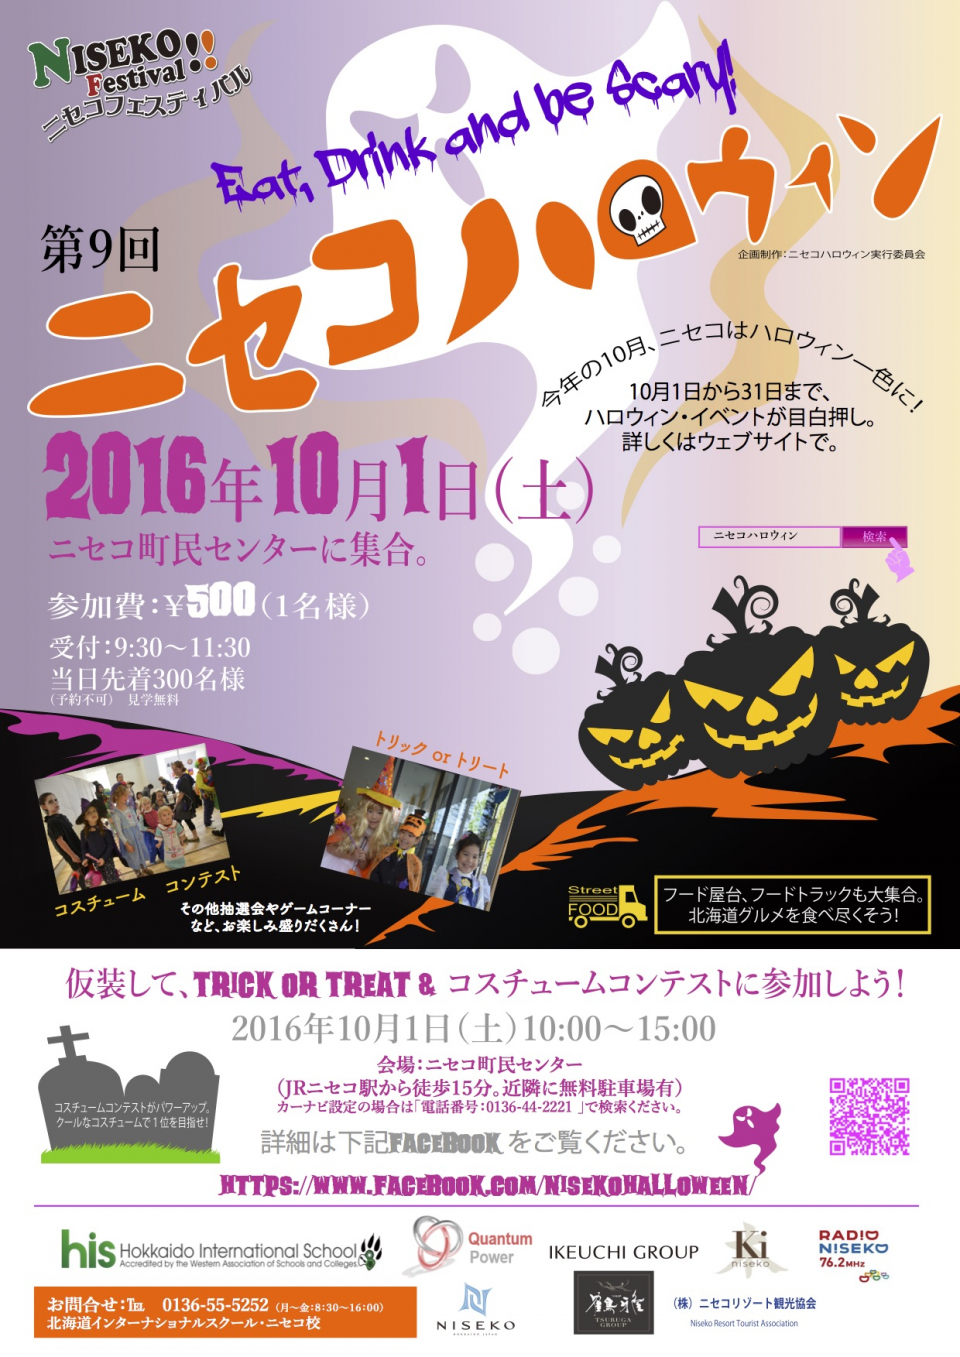 Niseko Halloween Event Notice